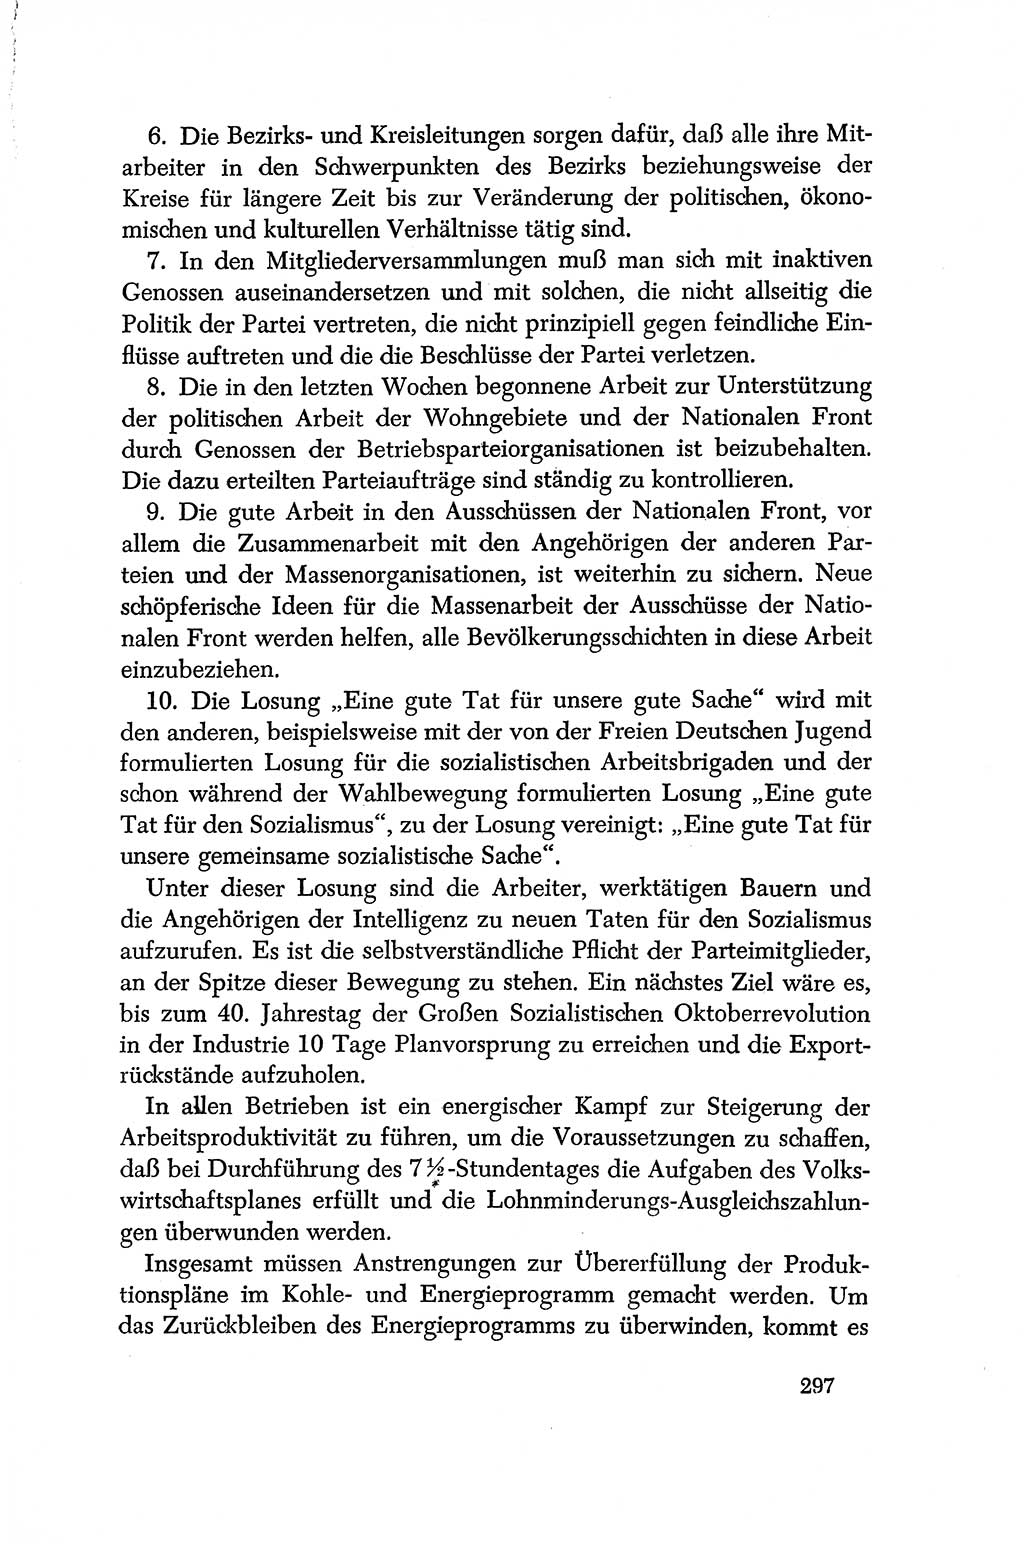 Dokumente der Sozialistischen Einheitspartei Deutschlands (SED) [Deutsche Demokratische Republik (DDR)] 1956-1957, Seite 297 (Dok. SED DDR 1956-1957, S. 297)